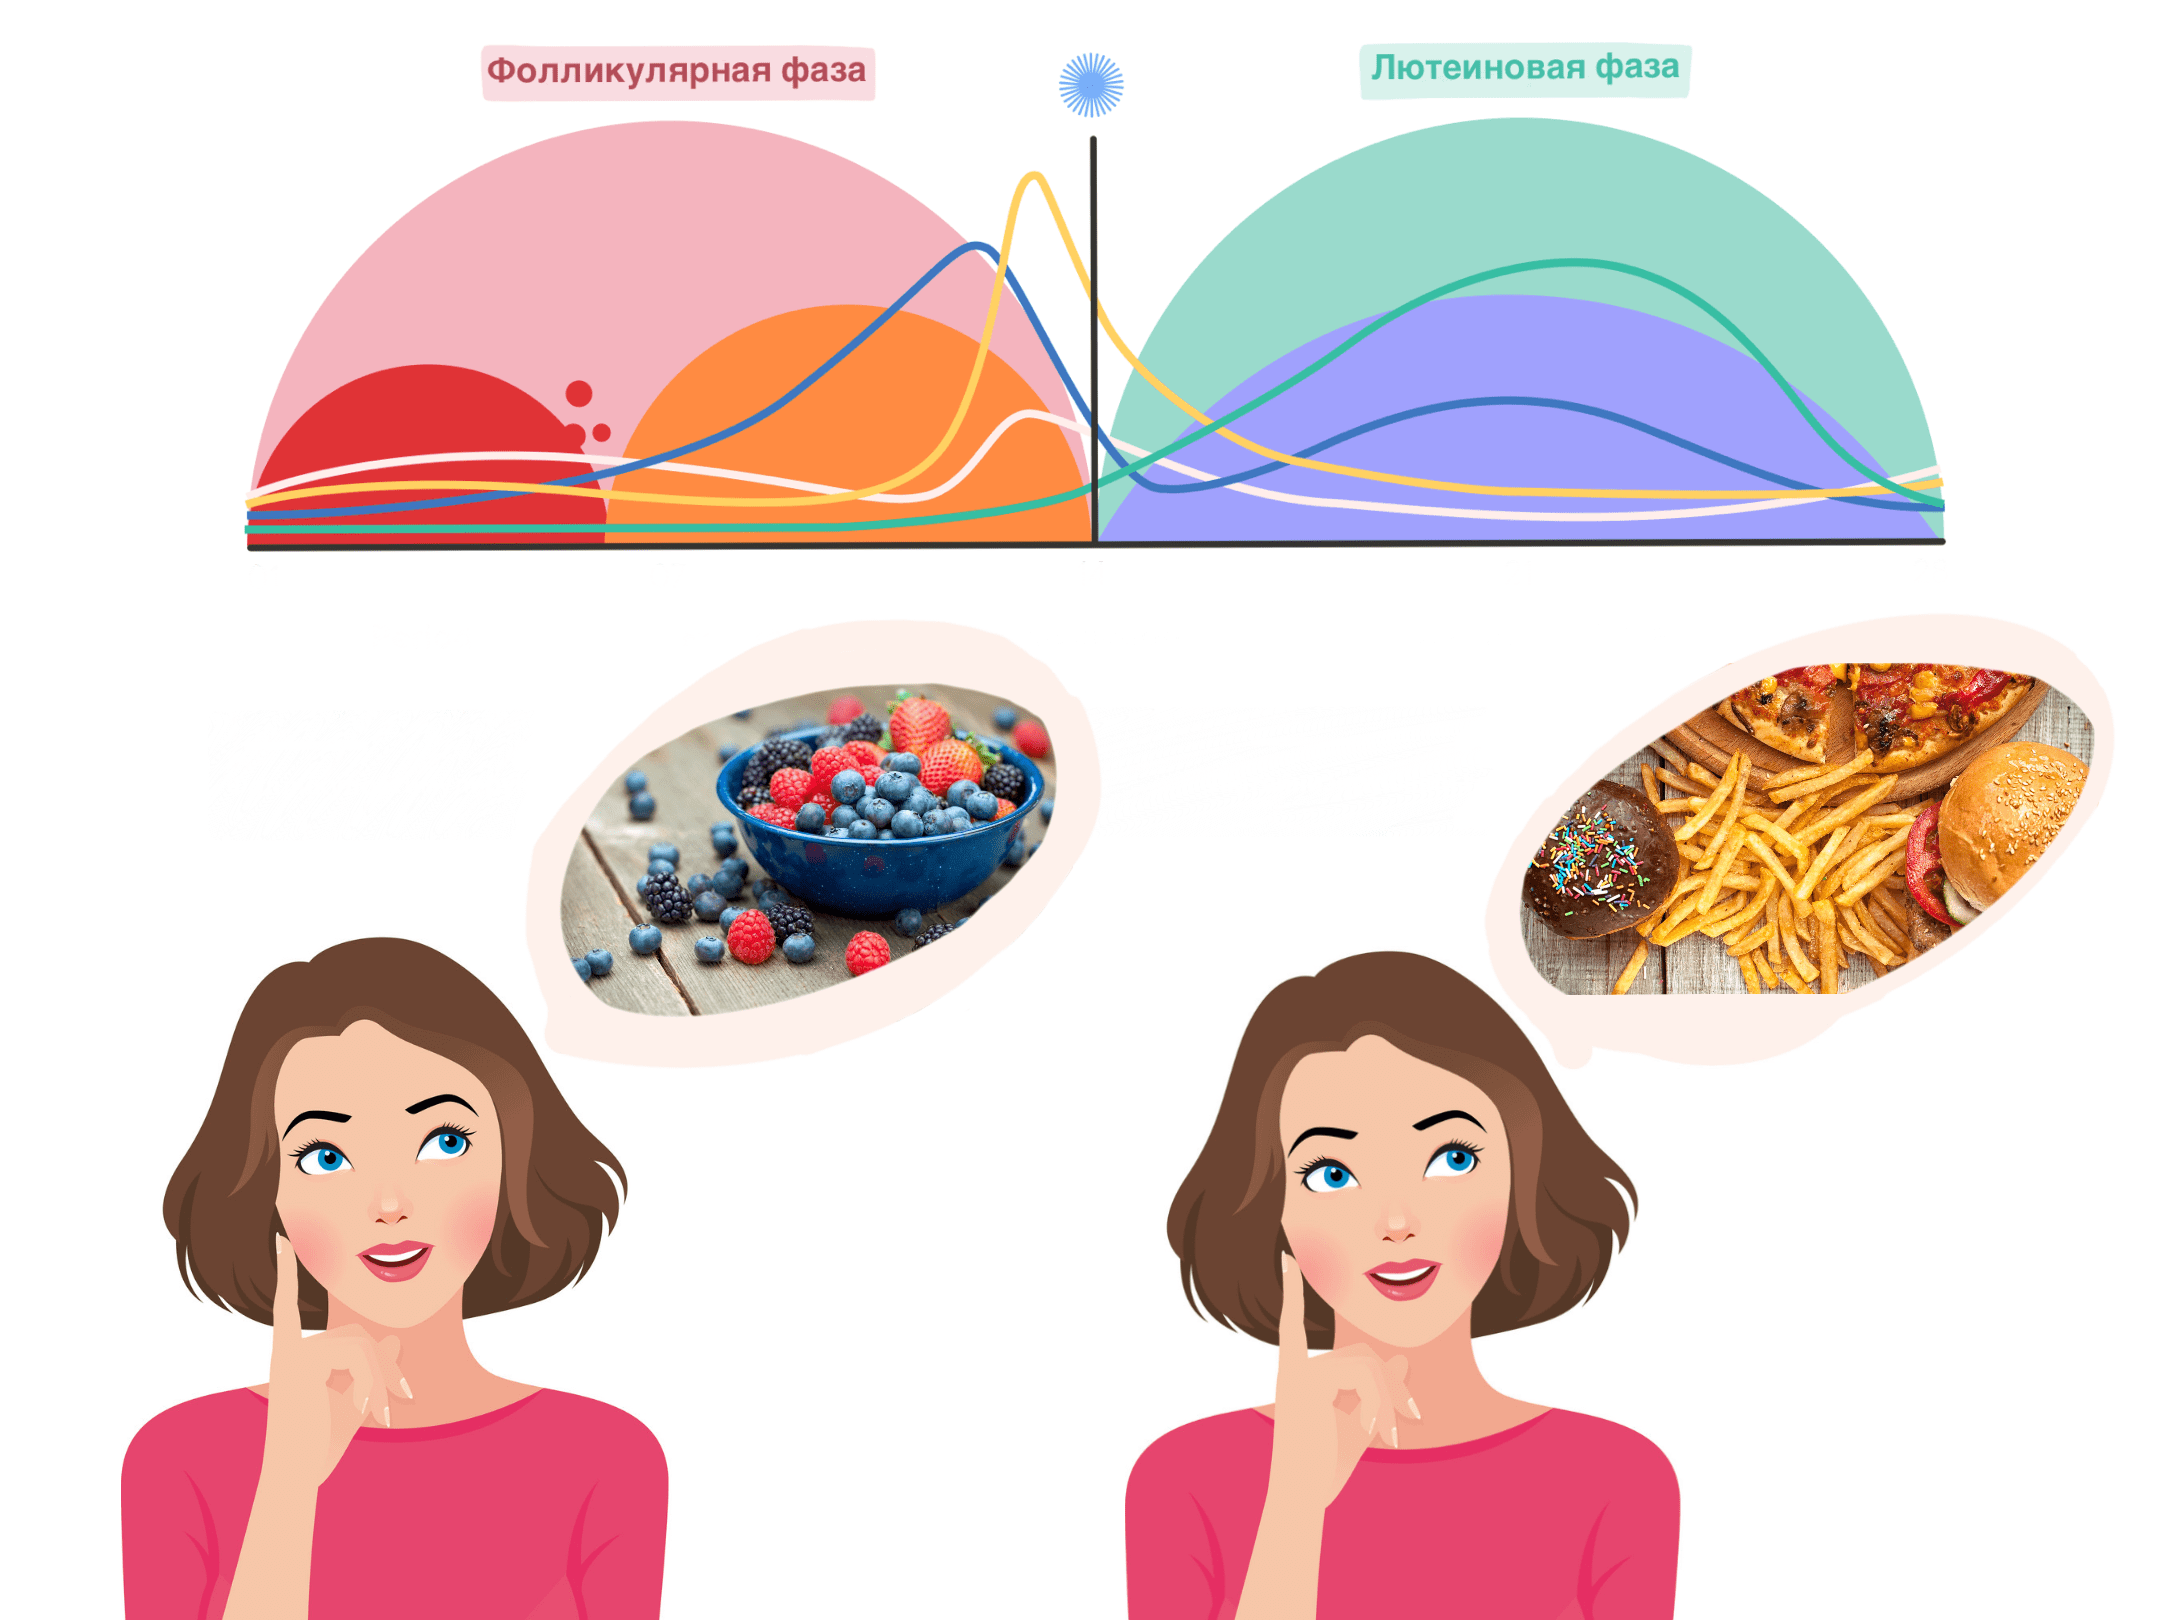 Предпочтения в пище на разных стадиях менструального цикла